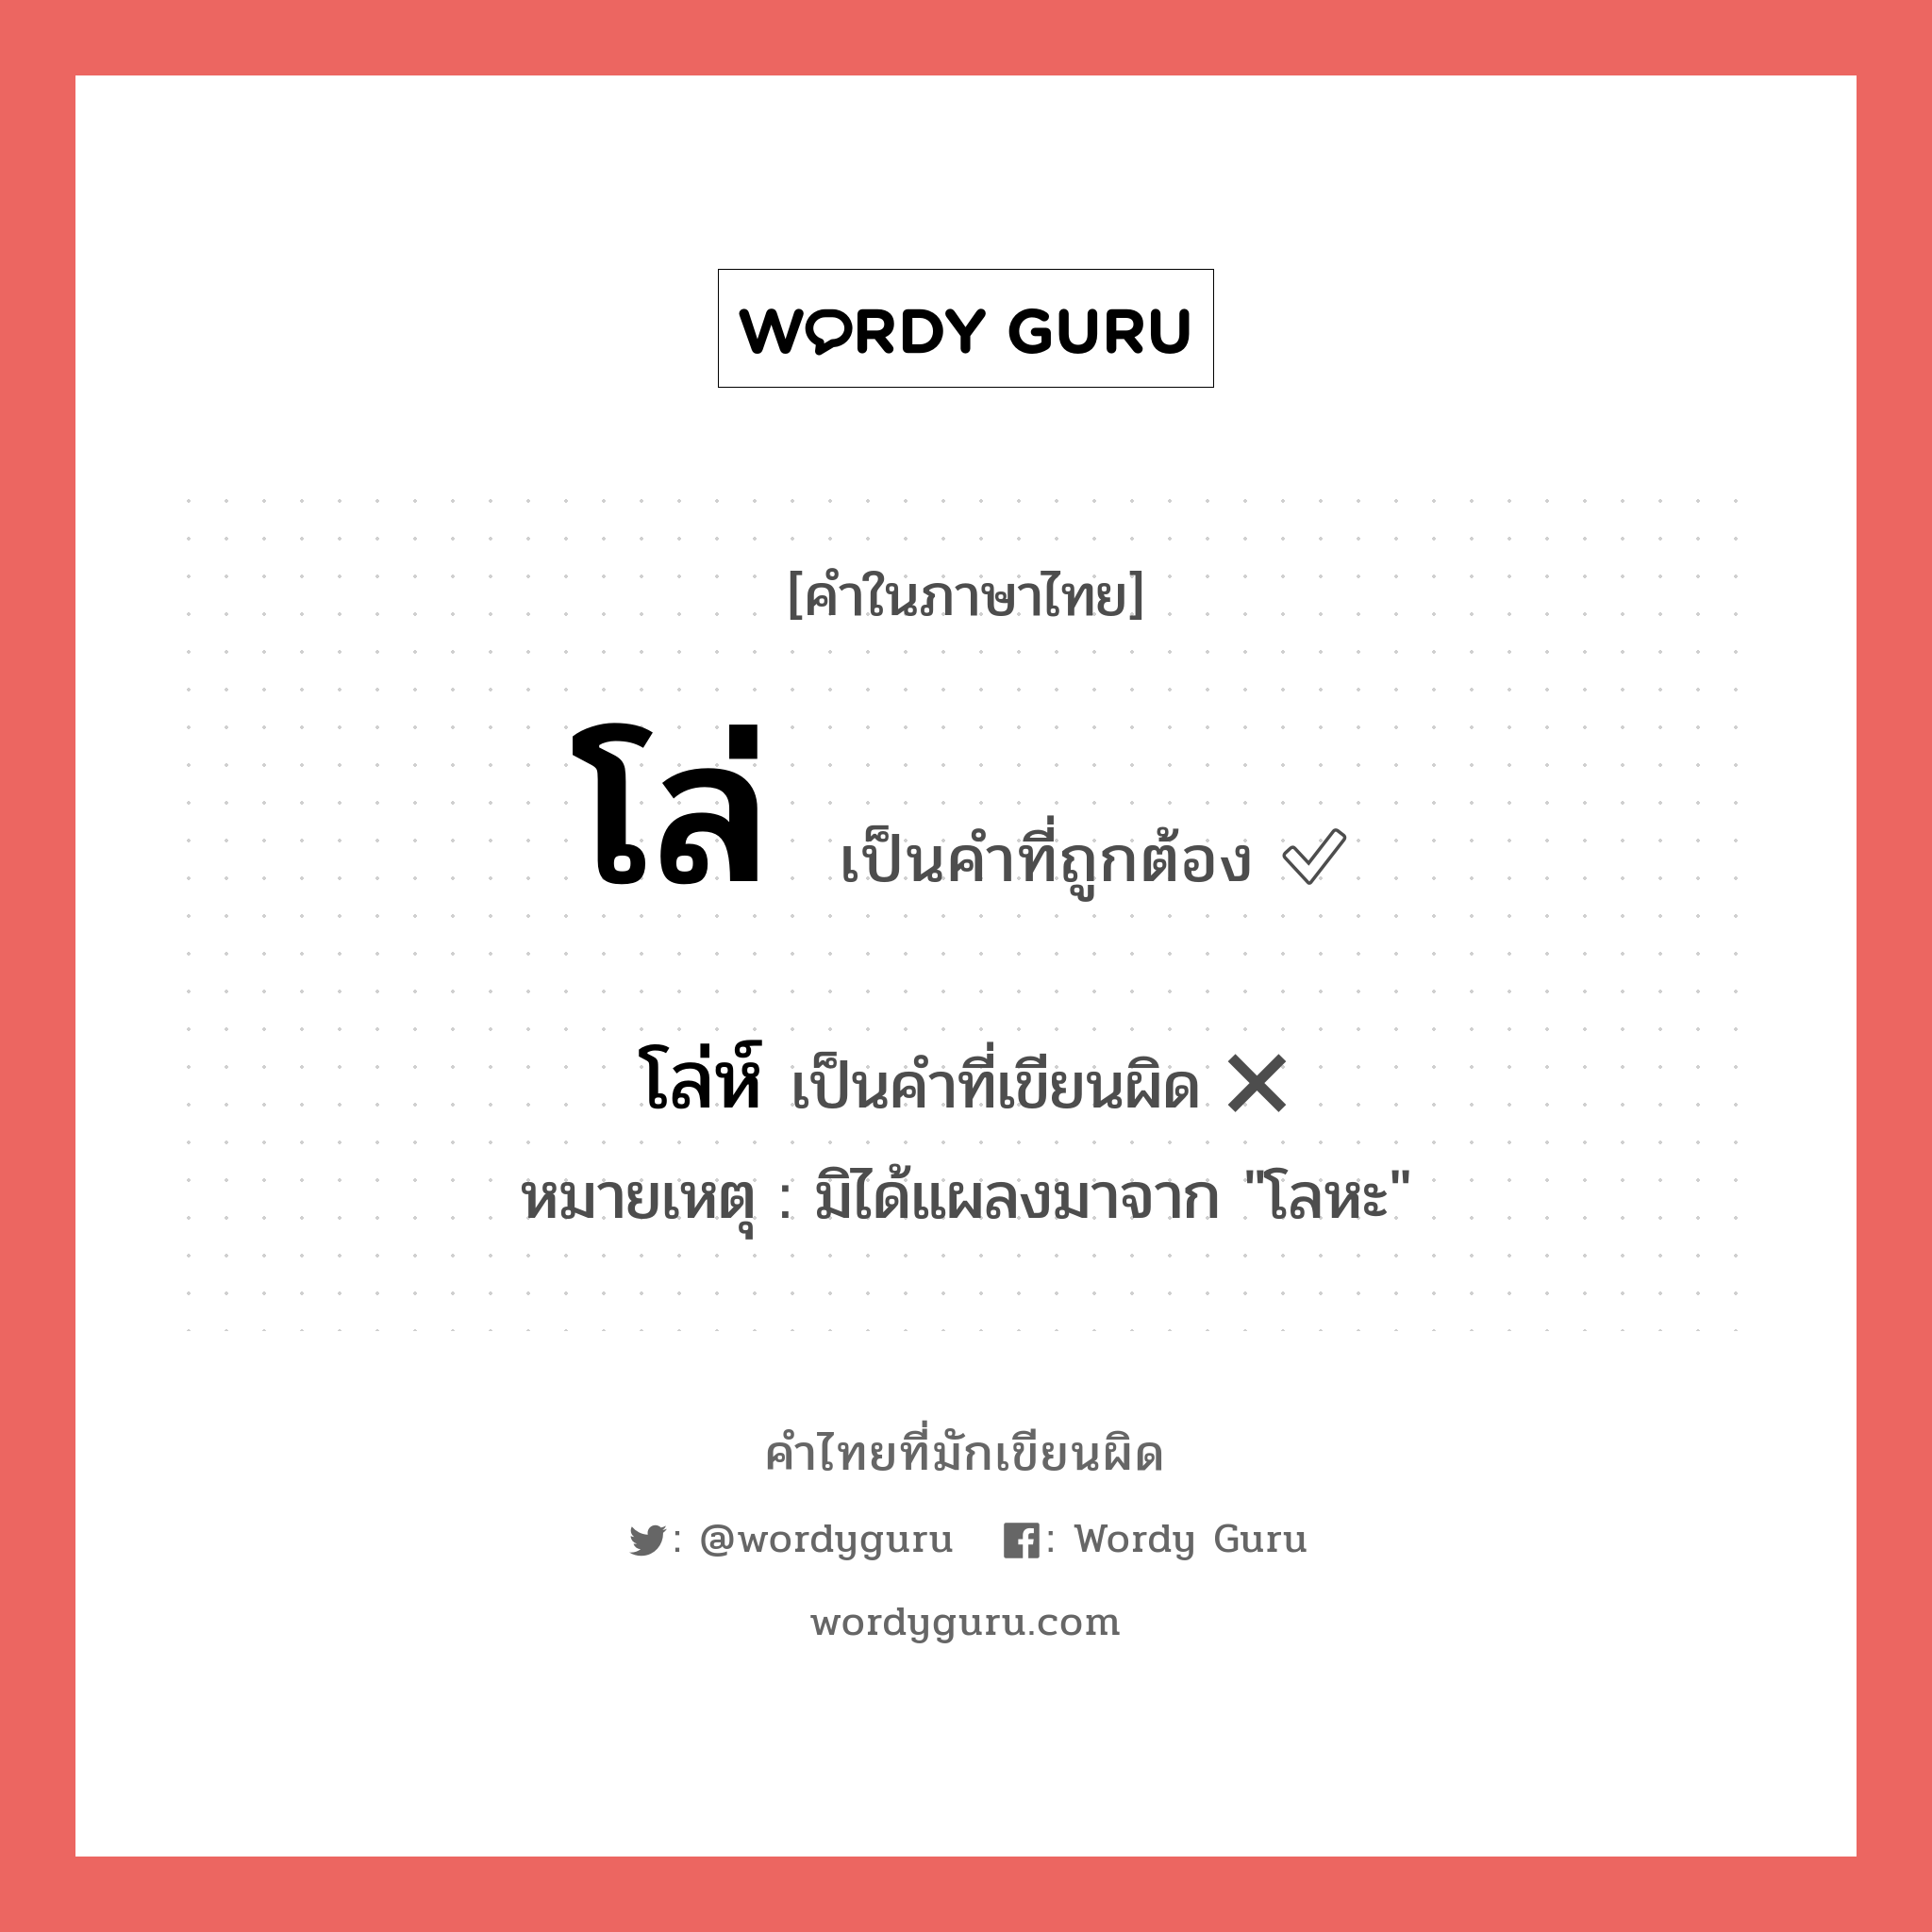 โล่ หรือ โล่ห์ เขียนยังไง? คำไหนเขียนถูก?, คำในภาษาไทยที่มักเขียนผิด โล่ คำที่ผิด ❌ โล่ห์ หมายเหตุ มิได้แผลงมาจาก "โลหะ"